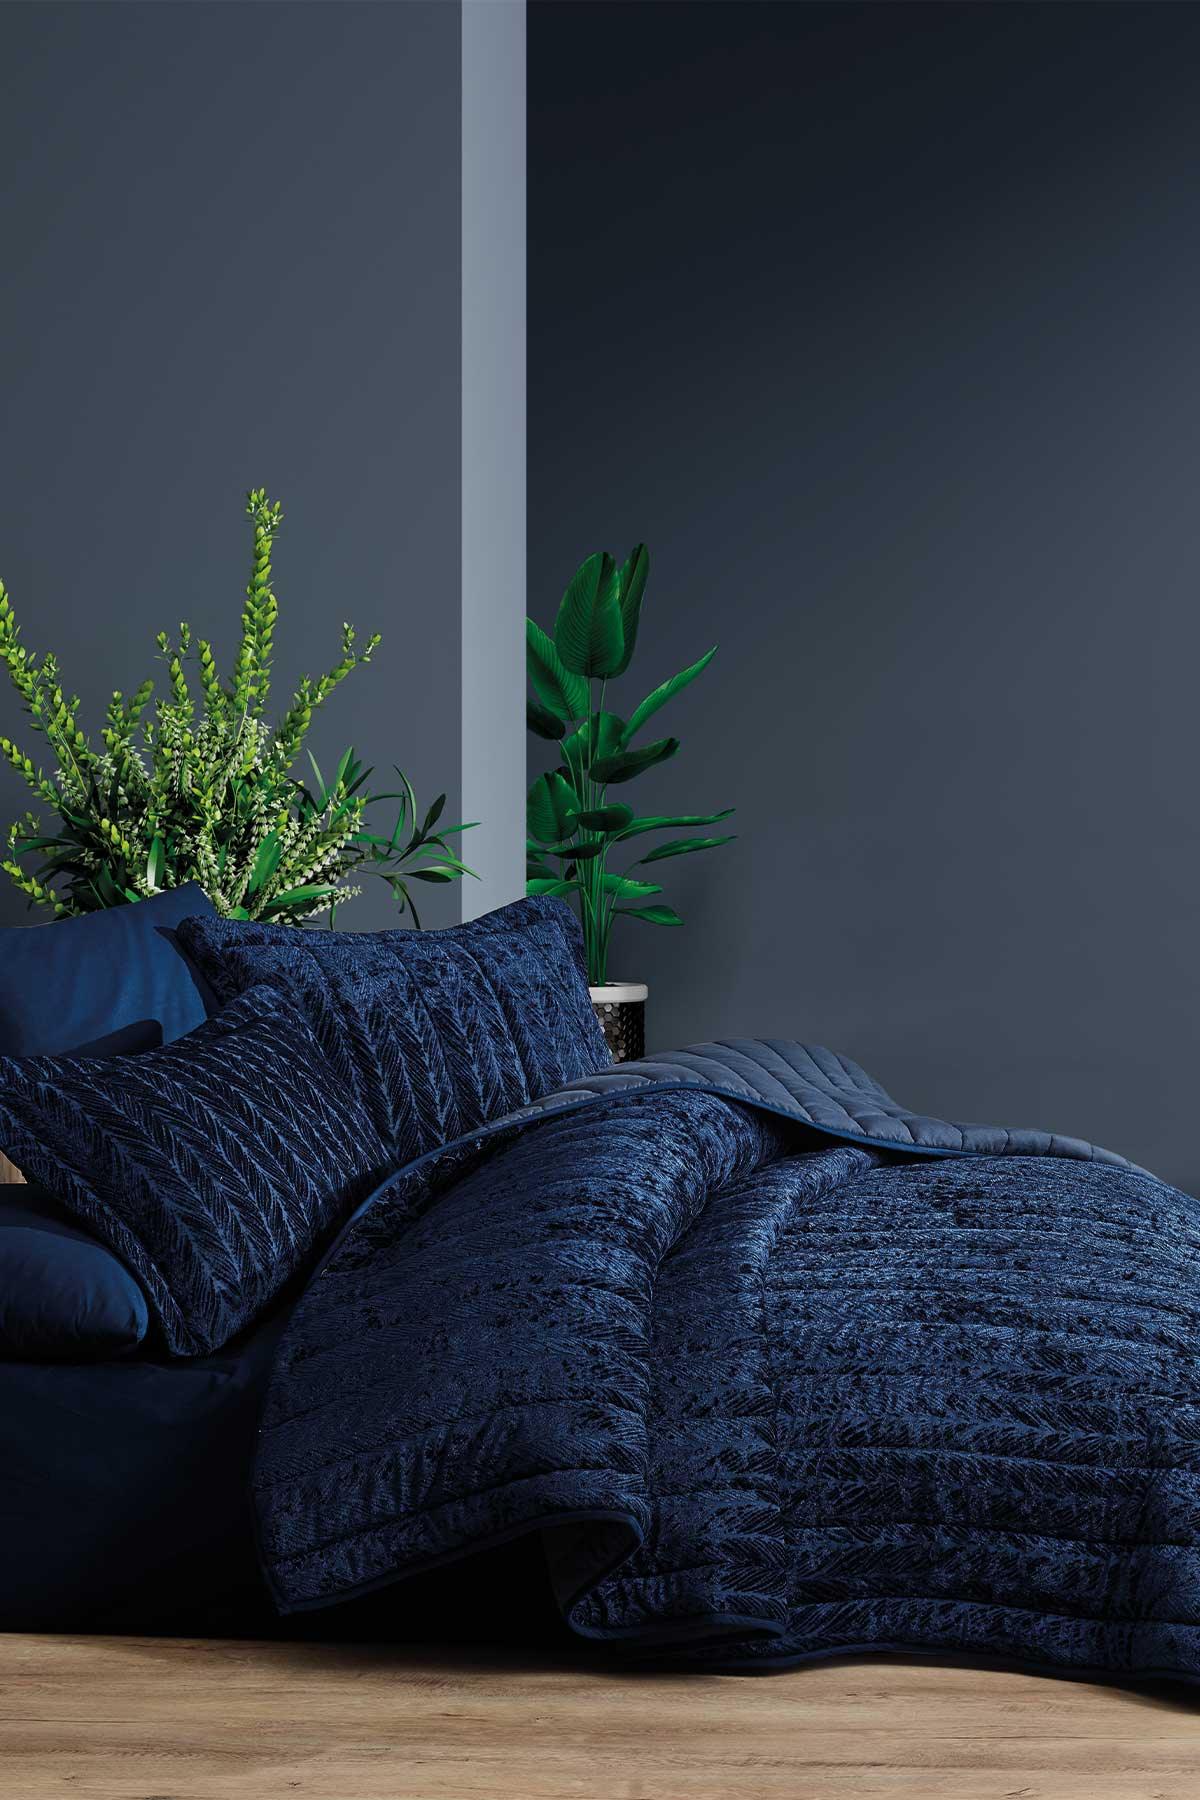 Comfort yeni nesil uykuseti - 6 parça Velvet Lacivert (230x220cm) - Elart Home